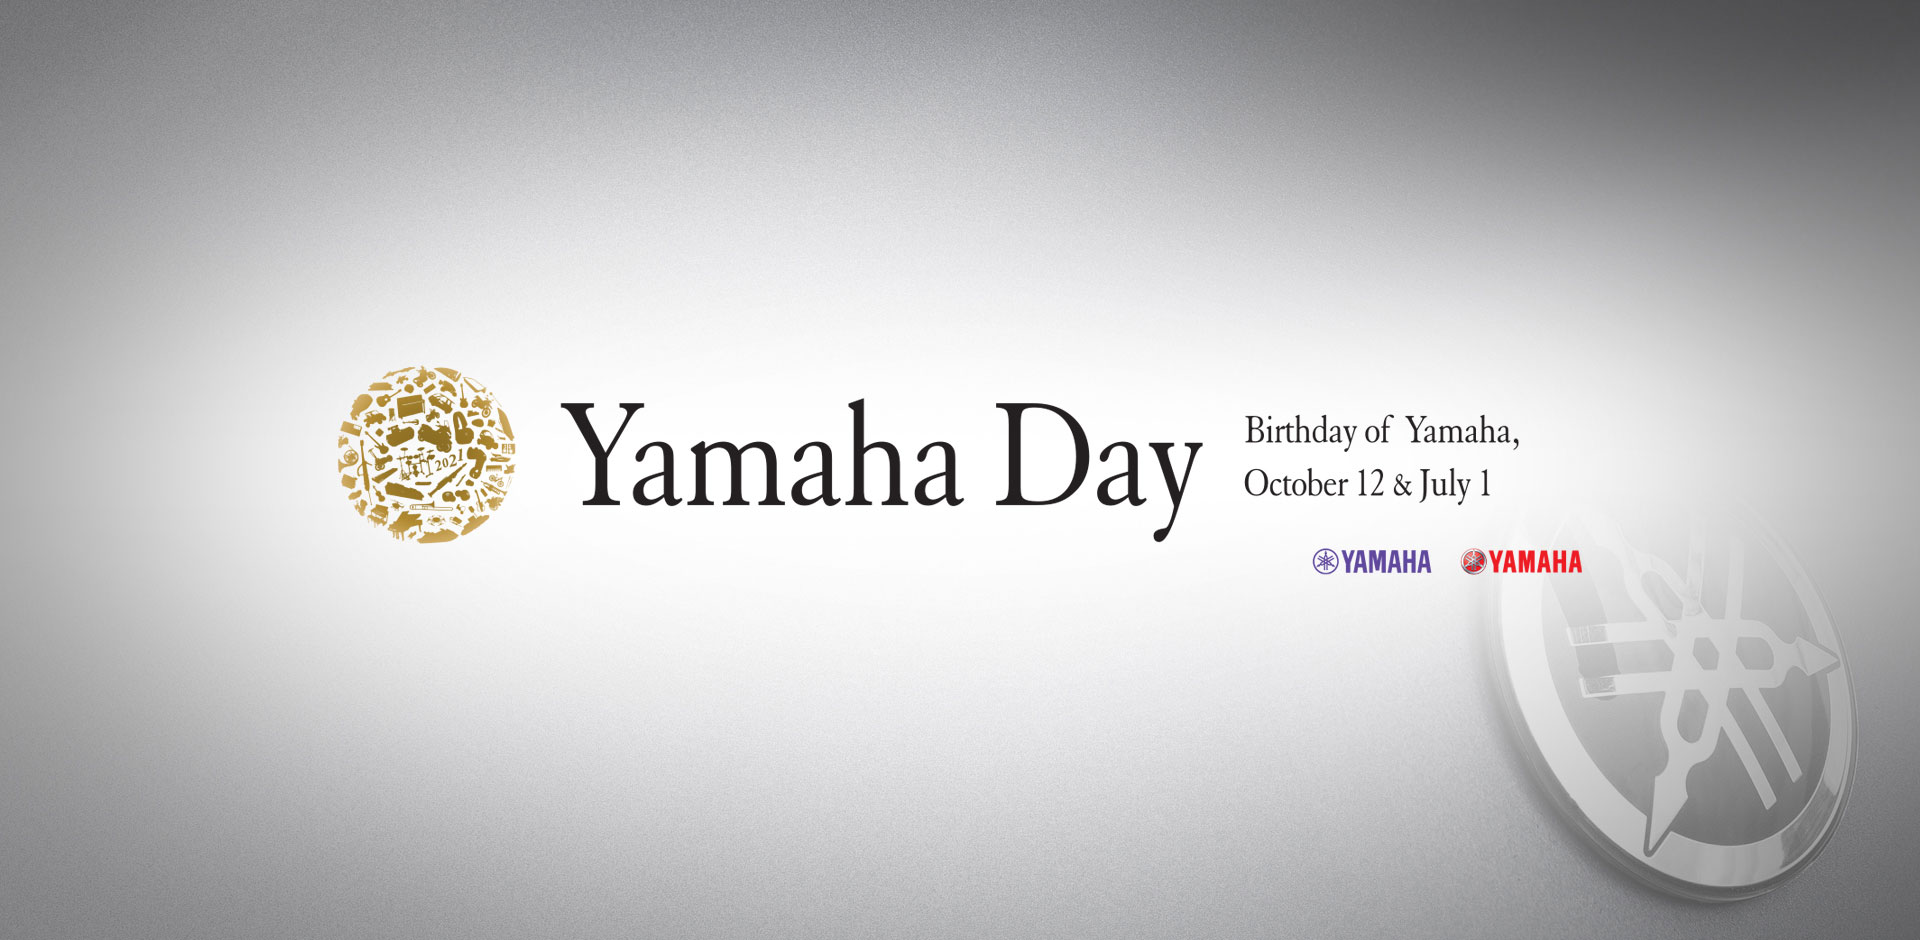 Celebrating Yamaha Day